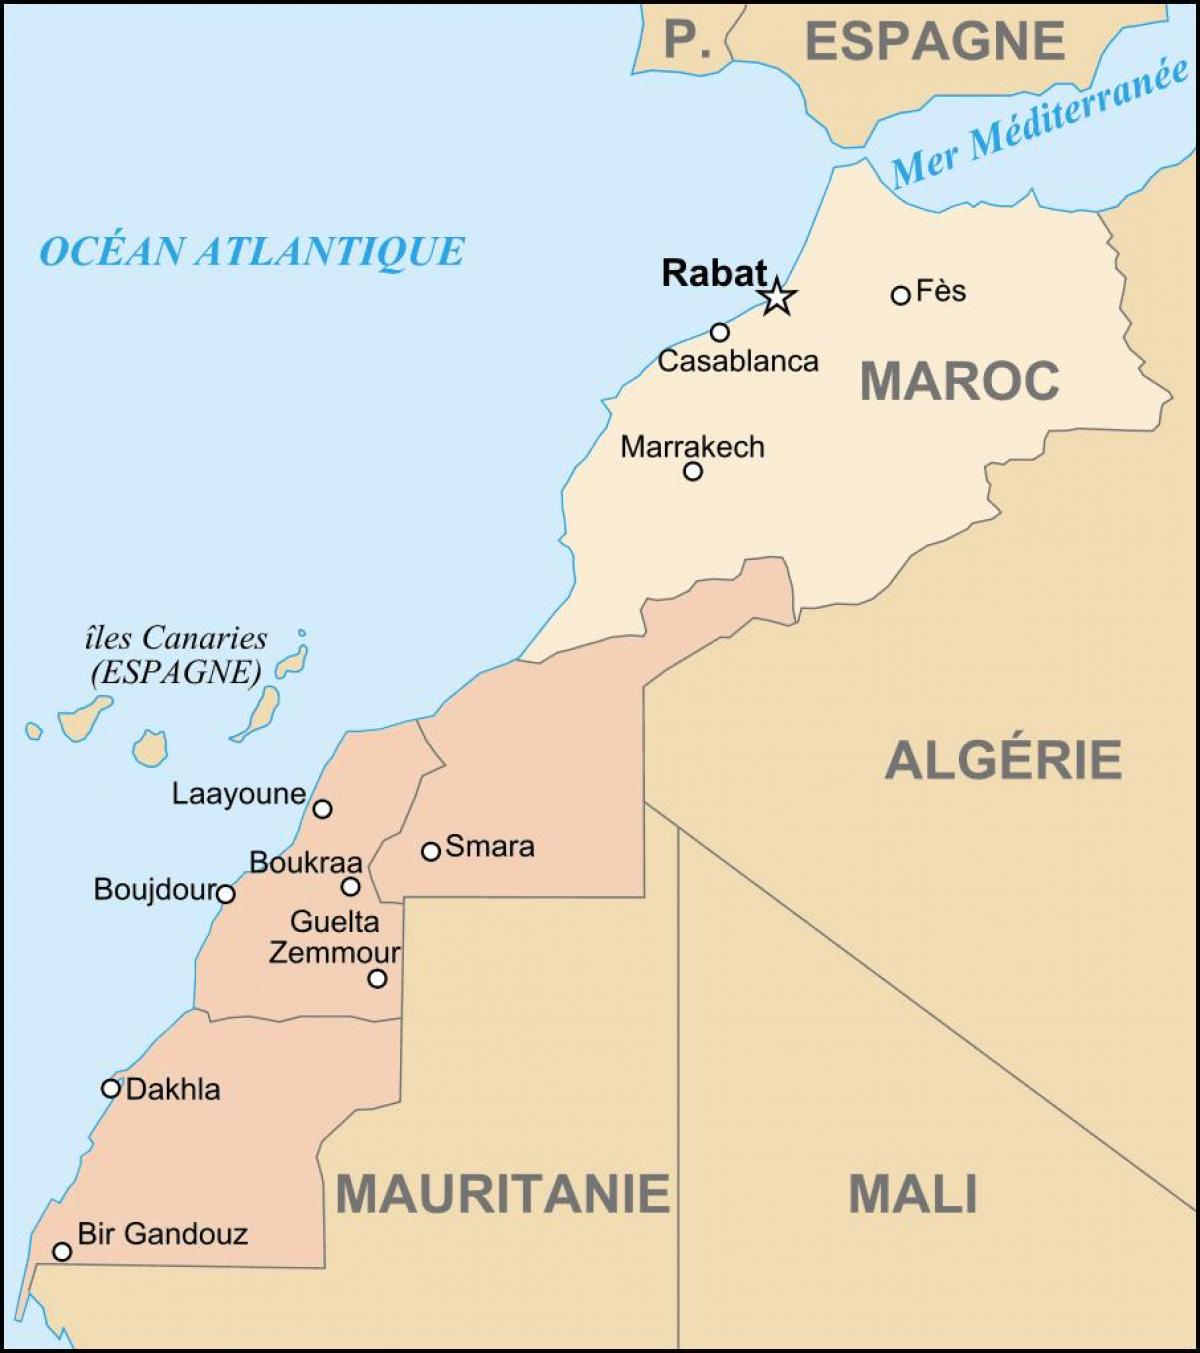 Karte von Marokko und den angrenzenden Ländern